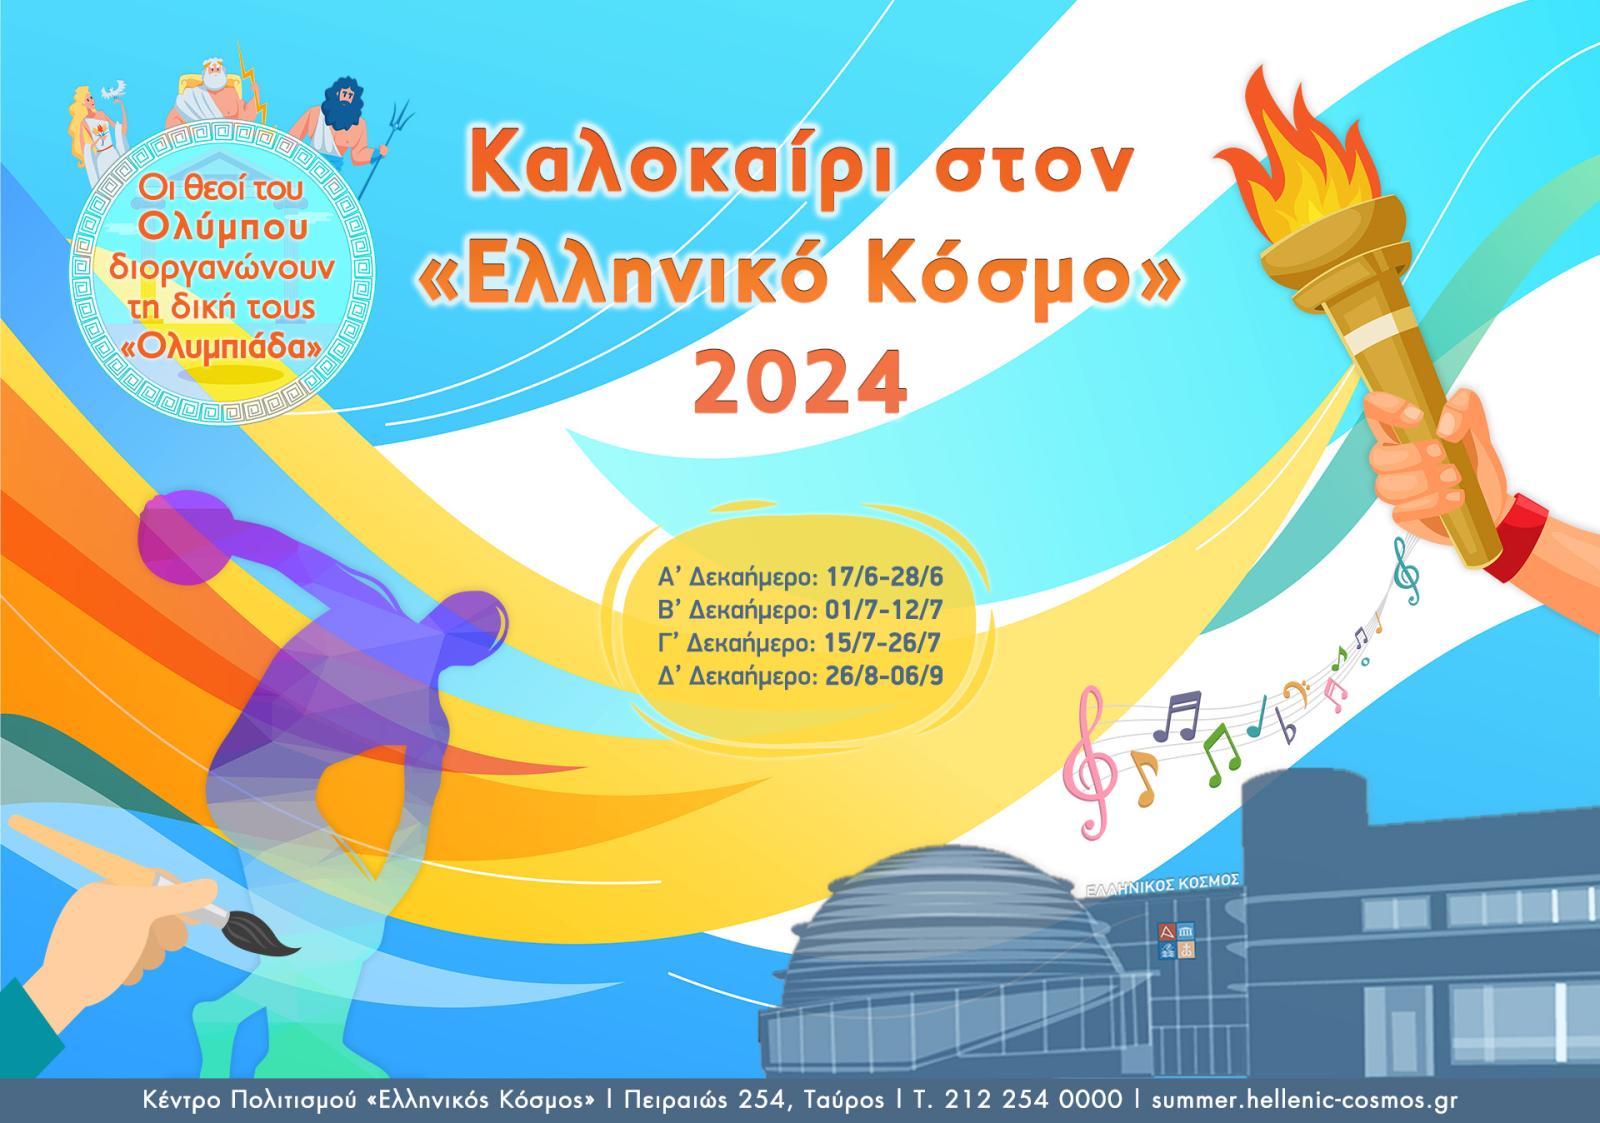 Θερινό εκπαιδευτικό πρόγραμμα «Καλοκαίρι» στην πόλη στον «Ελληνικό Κόσμο»